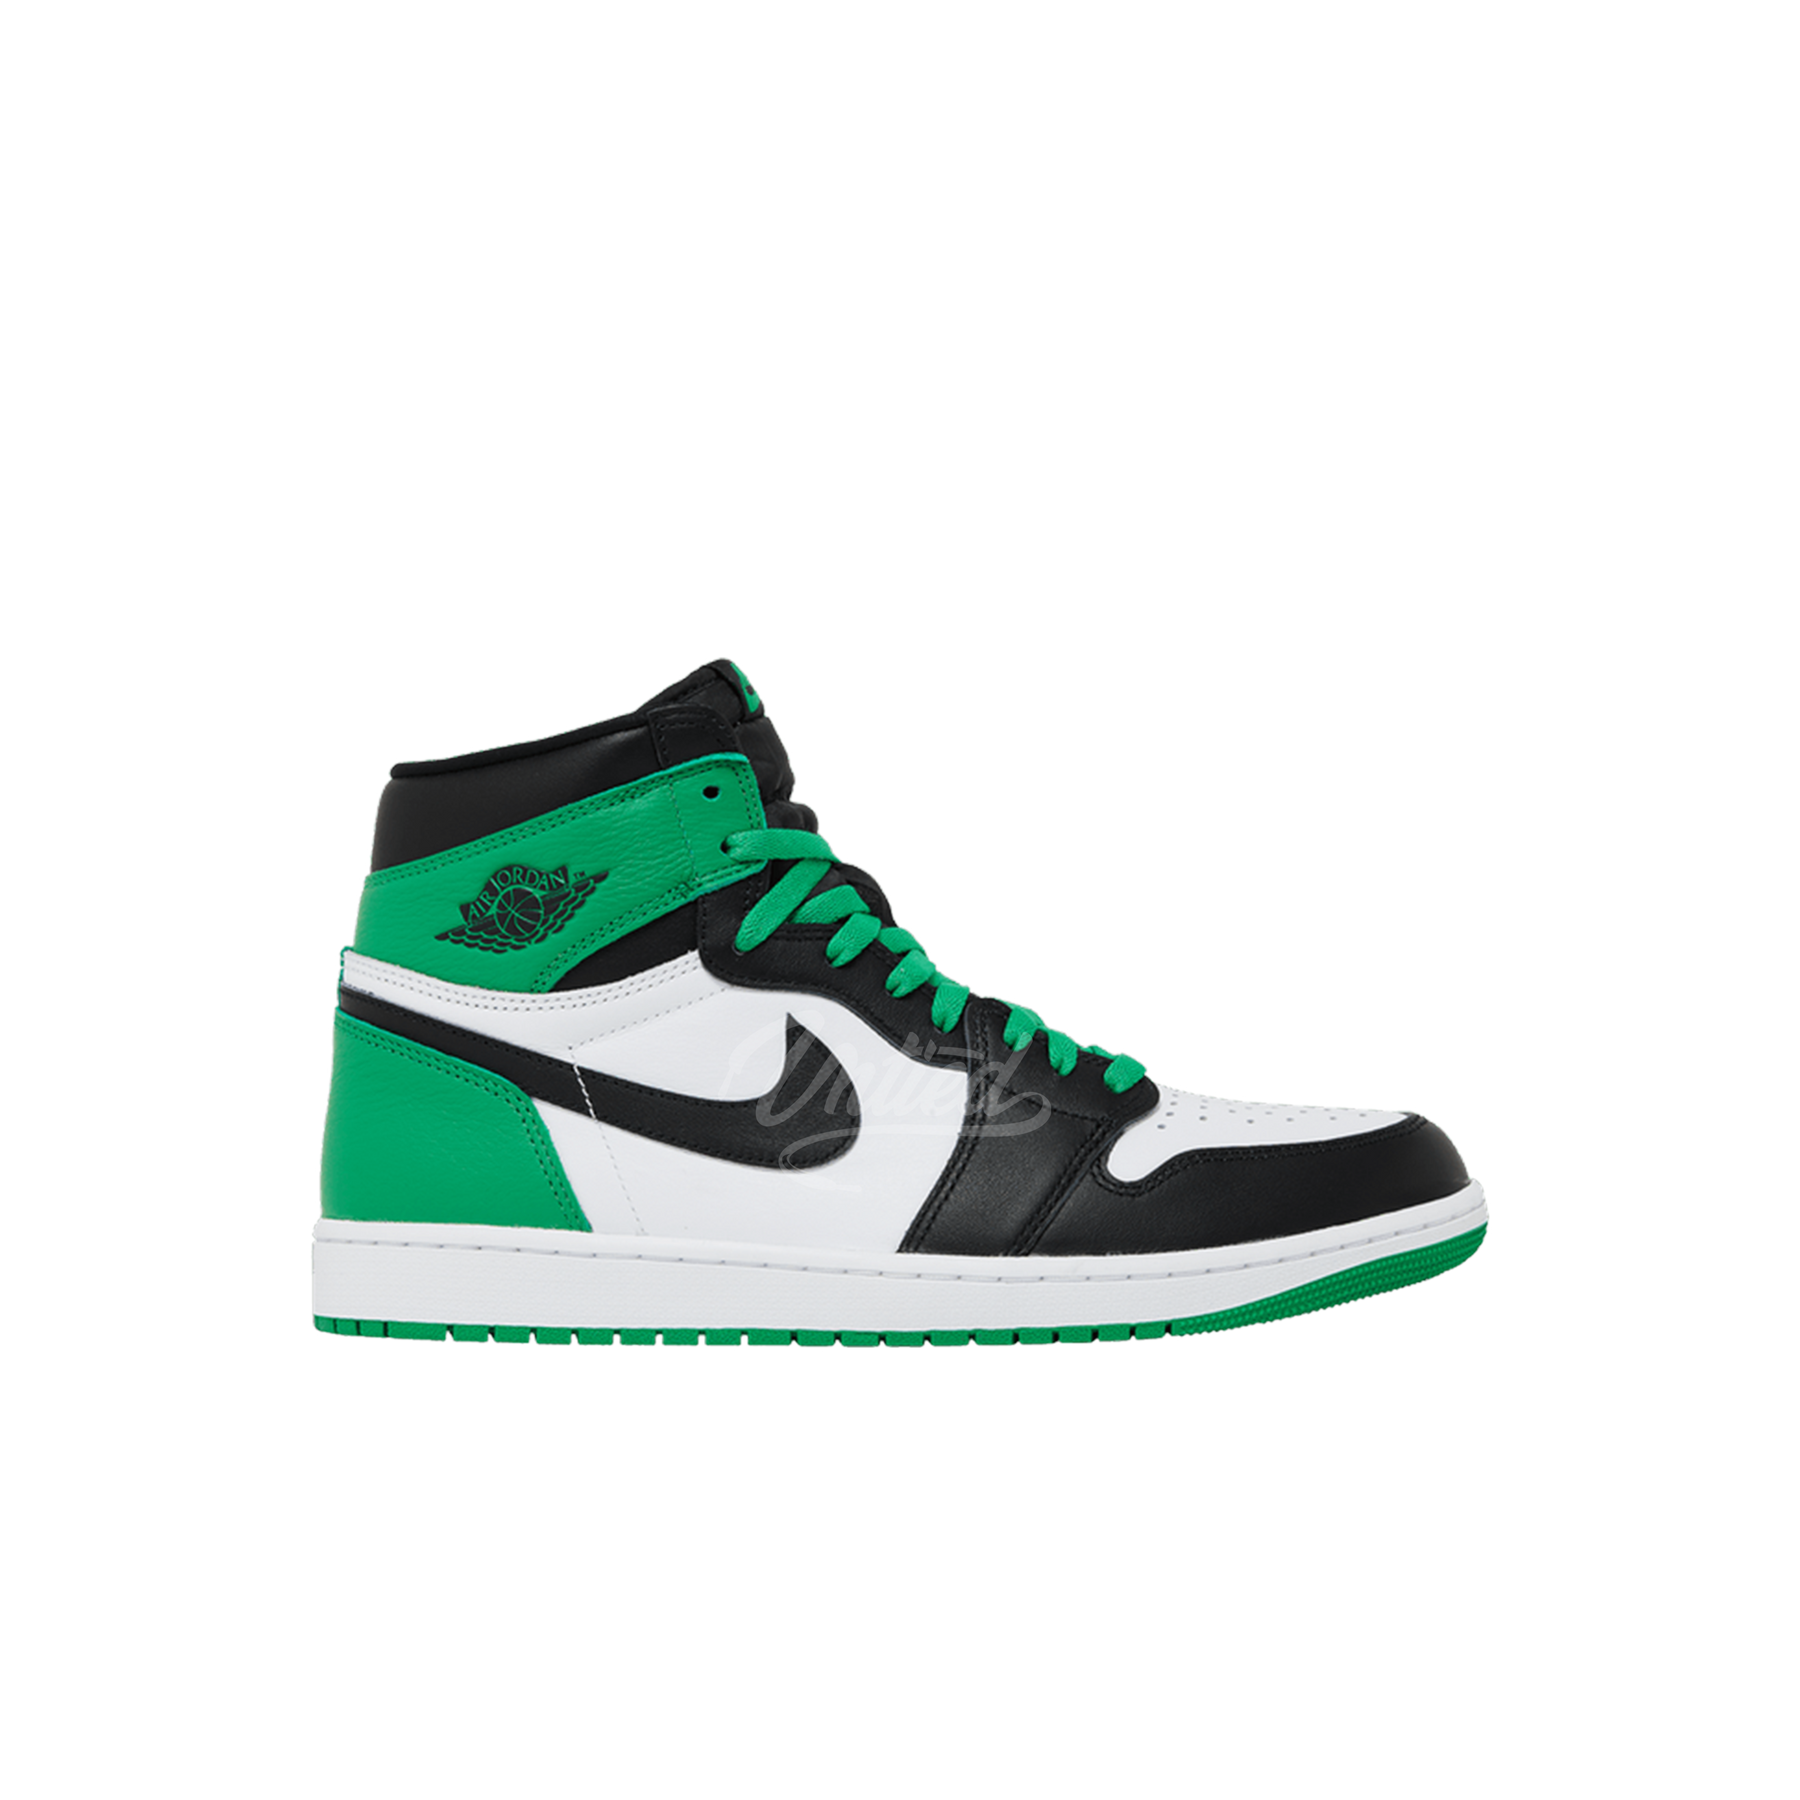 Air Jordan 1 "Lucky Green"